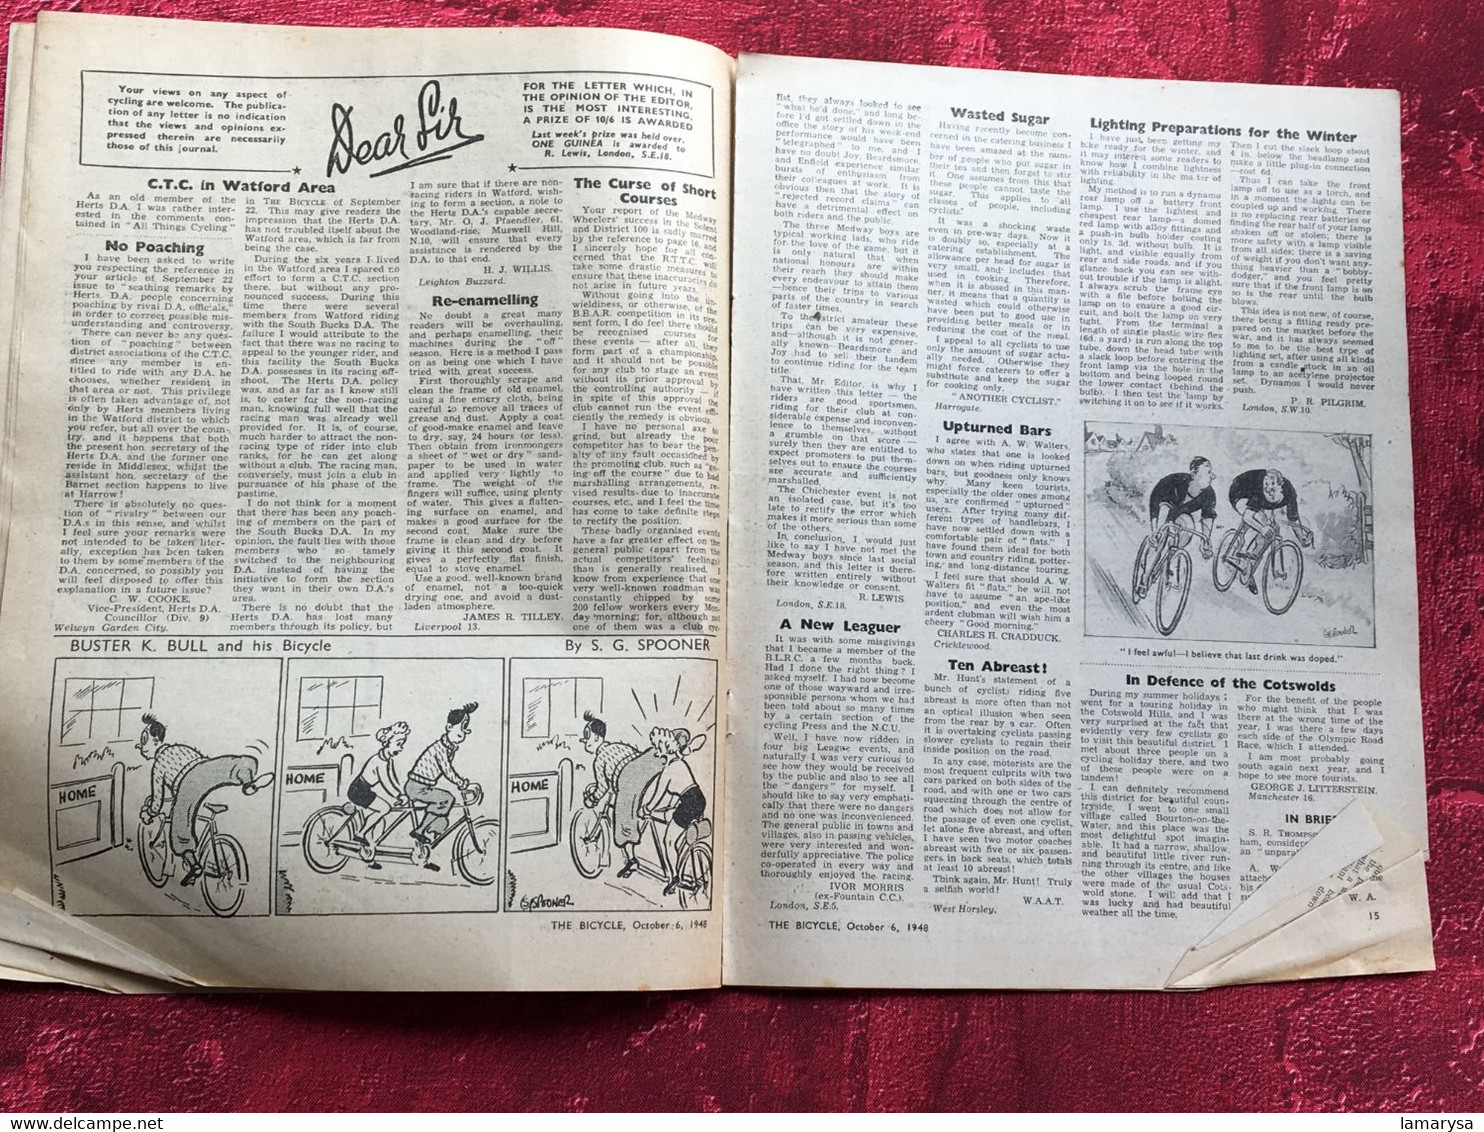 1948 N° 657 The Bicycle--vélo bicyclette-reliables accessoire-pumps-PHOTOS-Textes-jeux-Publicités-Cycle Cyclisme-English